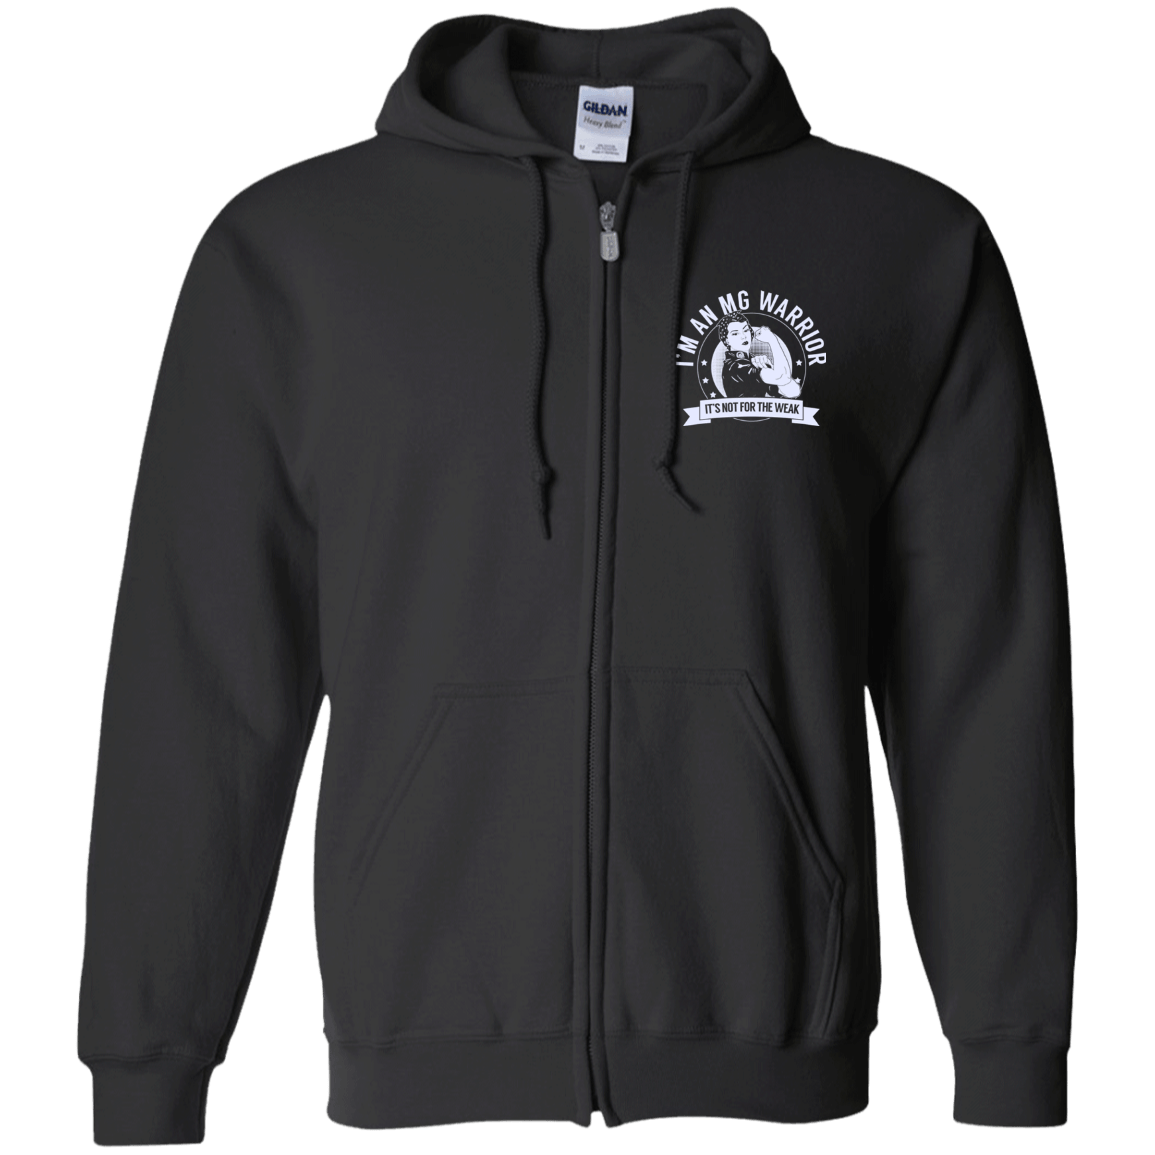 Myasthenia Gravis - MG Warrior NFTW Zip Up Hooded Sweatshirt - The Unchargeables